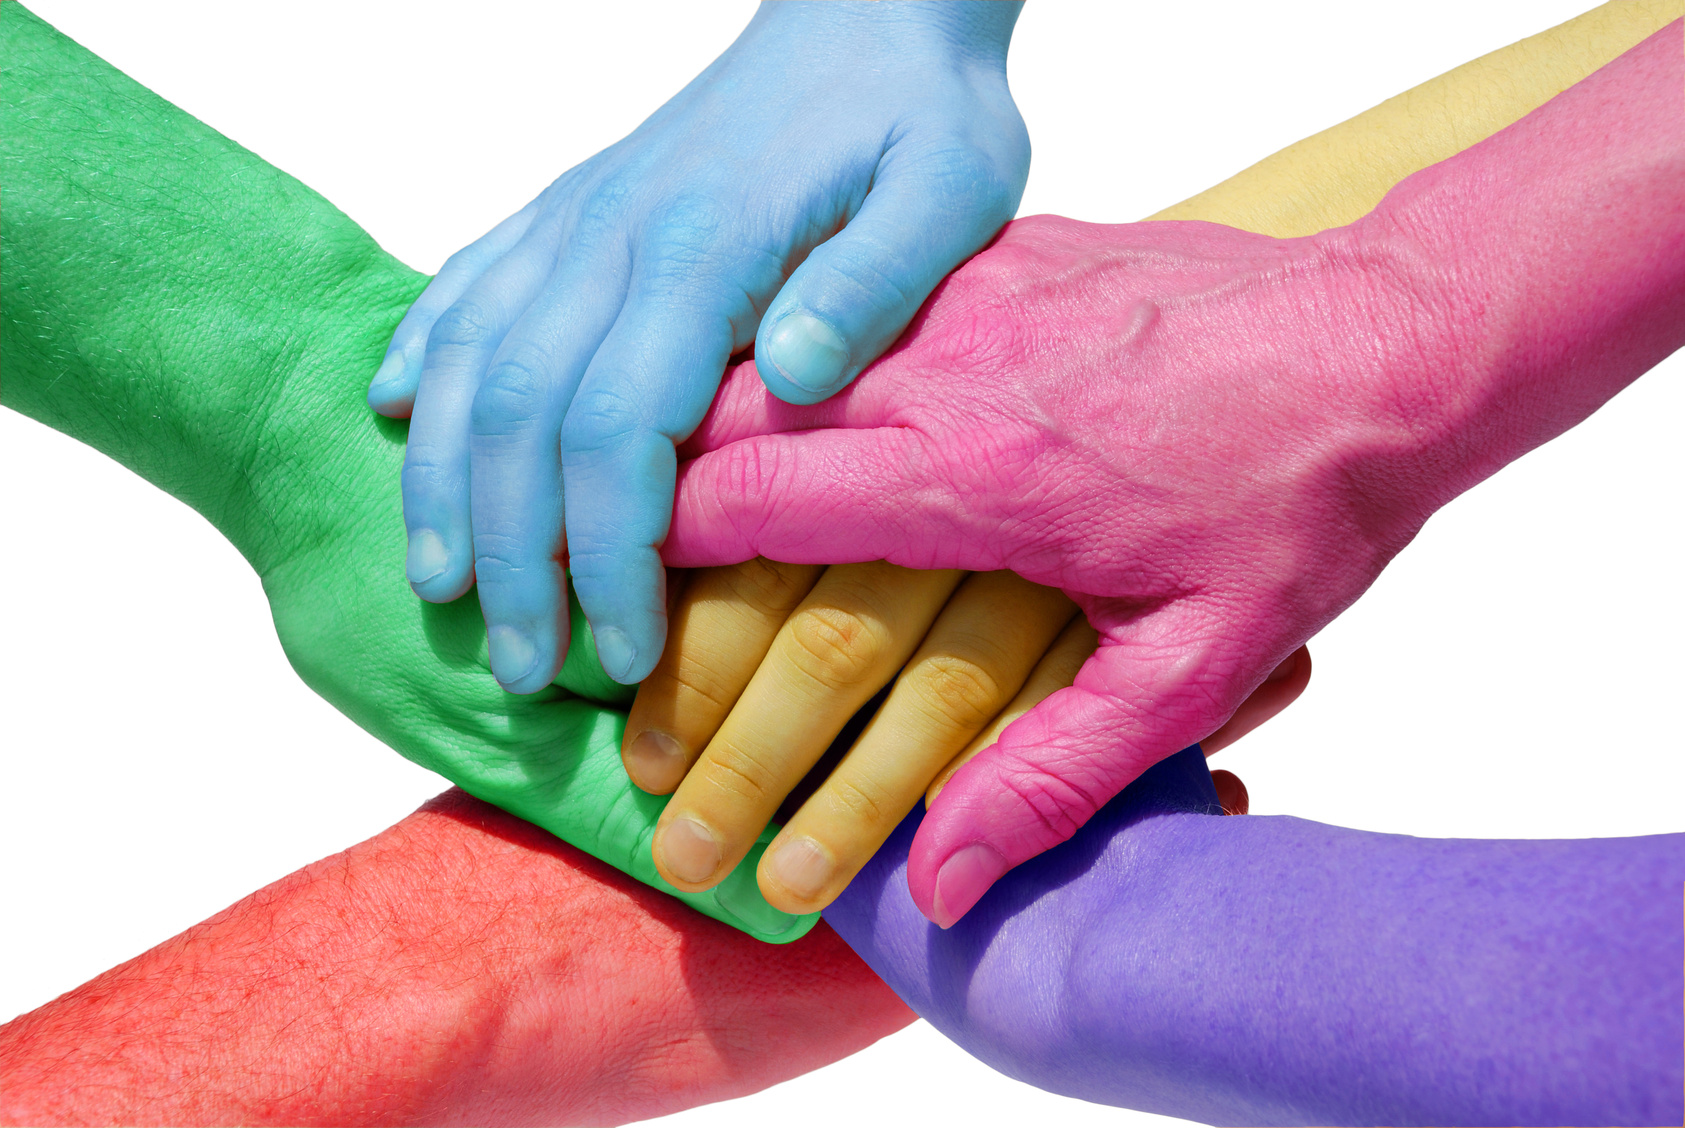 many hands symbolizing teamwork/power/unity/equality